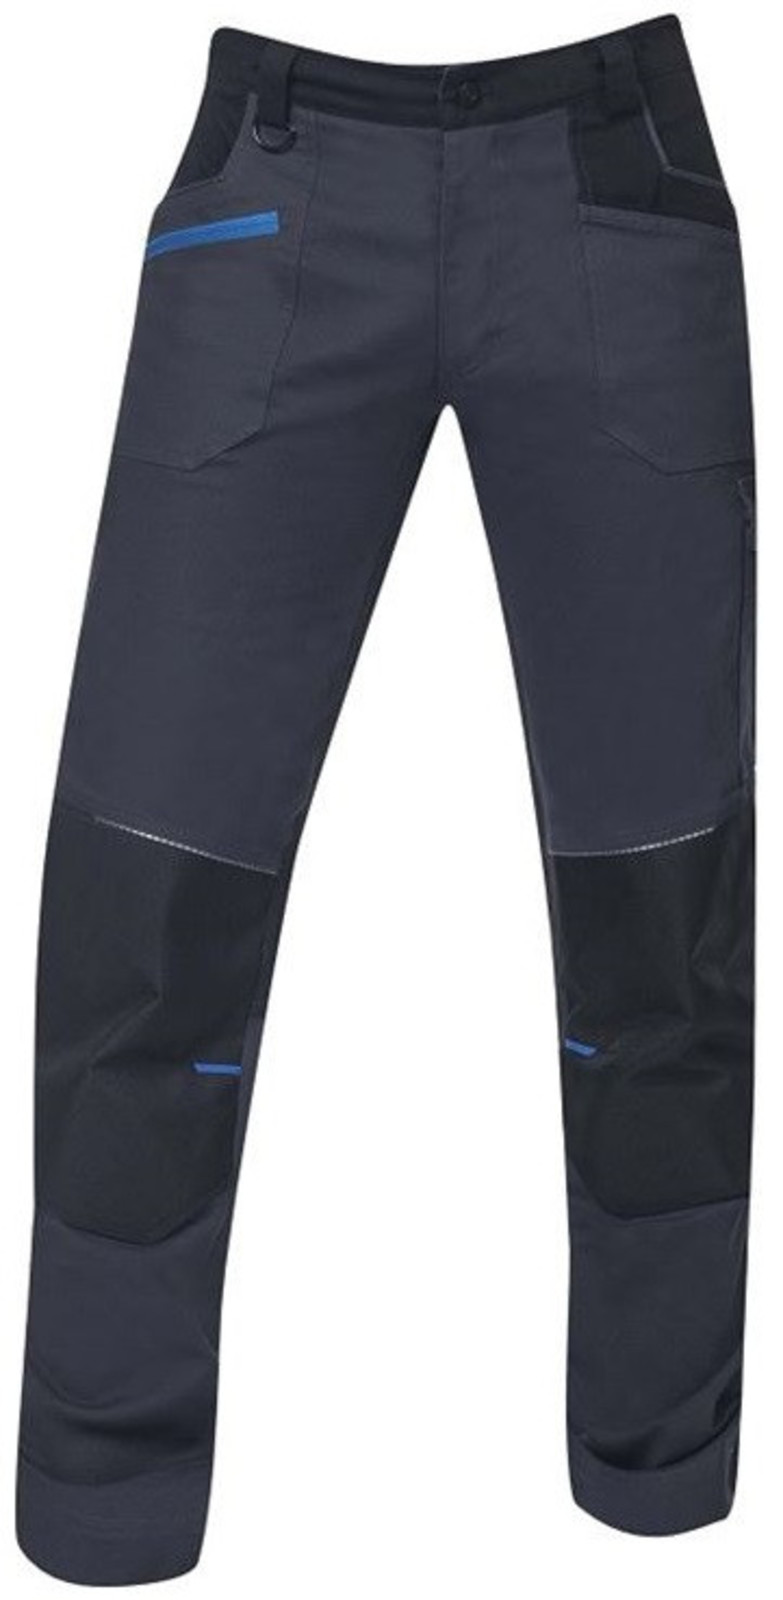 Pánske strečové montérkové nohavice Ardon 4Xstretch - veľkosť: 54, farba: tmavo šedá